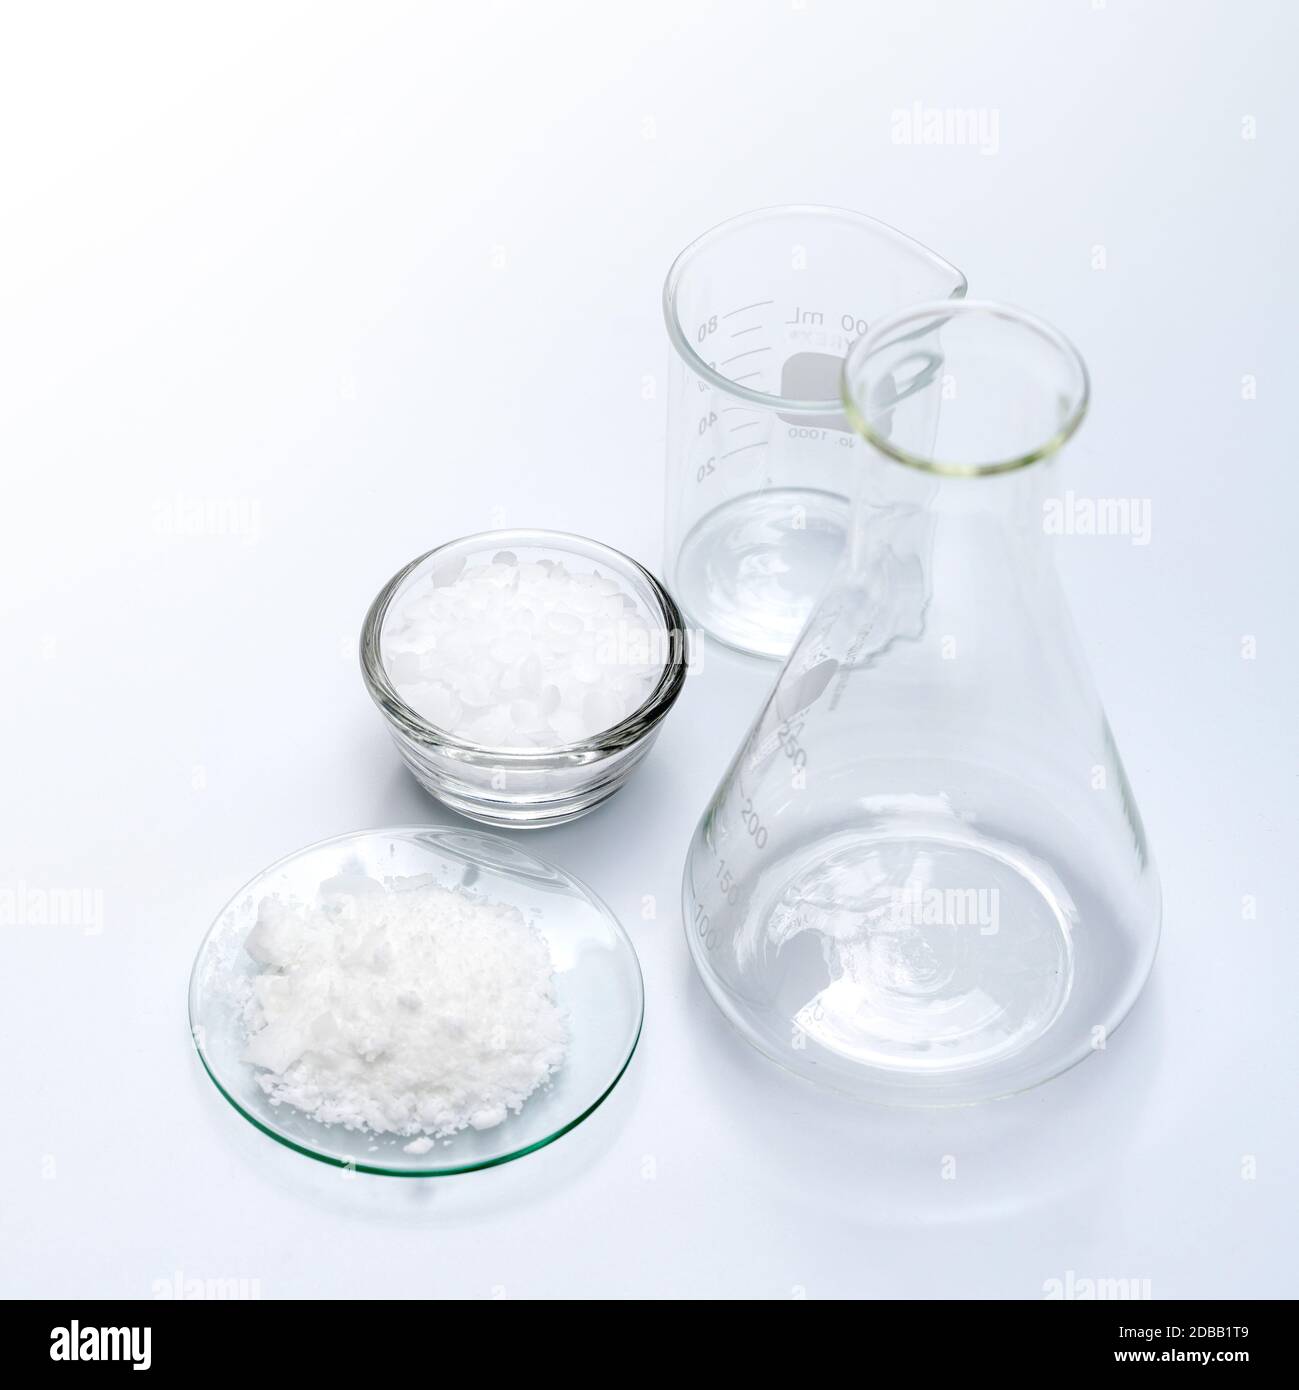 Ingredientes químicos cosméticos sobre mesa de laboratorio. Cera microcristalina, cloruro de potasio (KCl). Foto de stock